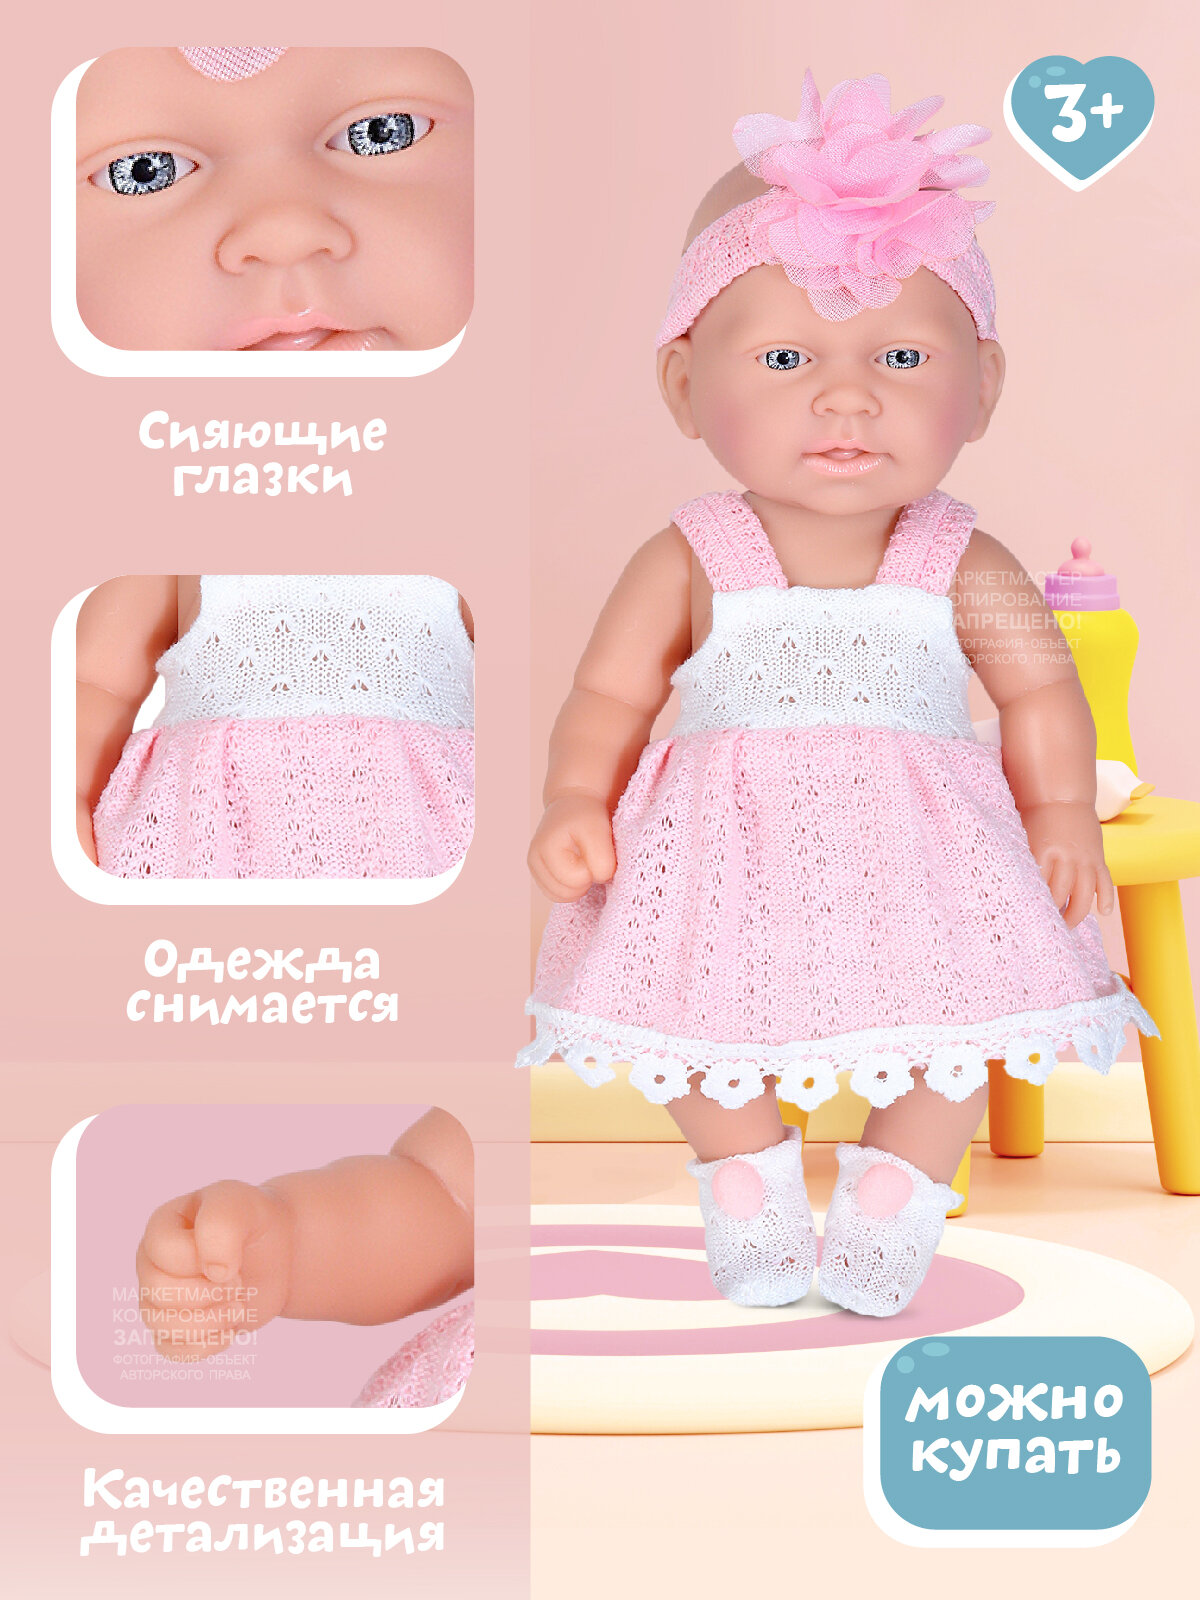 Кукла для девочек Пупс 25 см серия "Нежность" ТМ "Amore Bello", для игры в дочки-матери, для девочек, бело-розовый, JB0208869